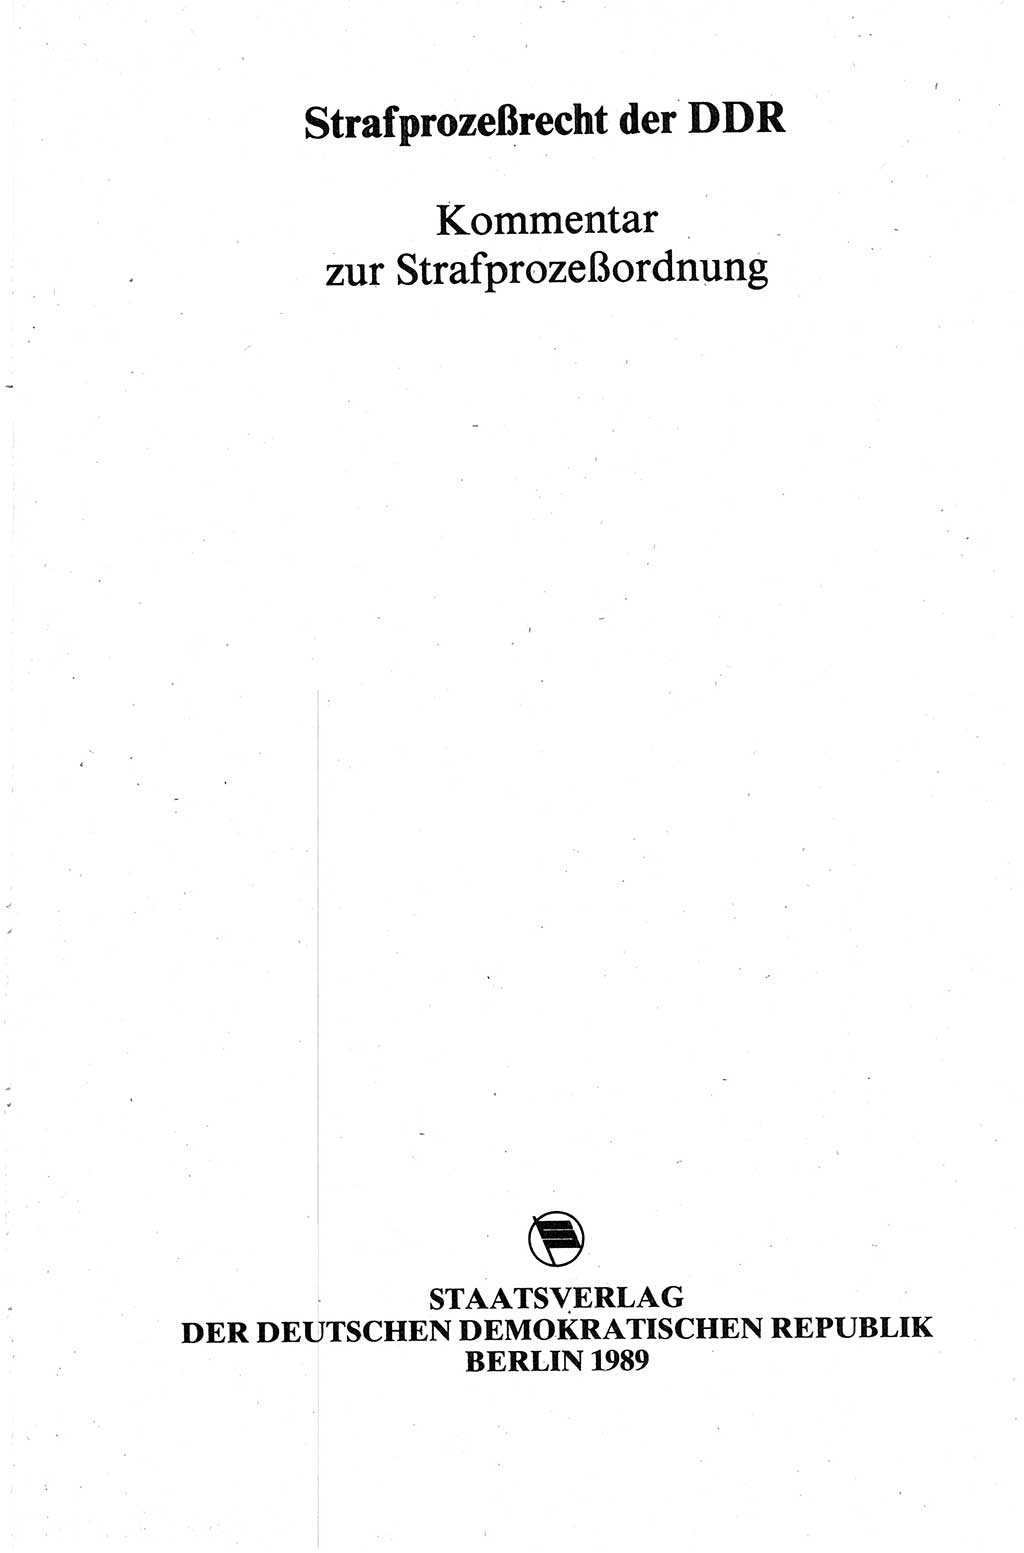 Strafprozeßrecht der DDR (Deutsche Demokratische Republik), Kommentar zur Strafprozeßordnung (StPO) 1989, Seite 3 (Strafprozeßr. DDR Komm. StPO 1989, S. 3)